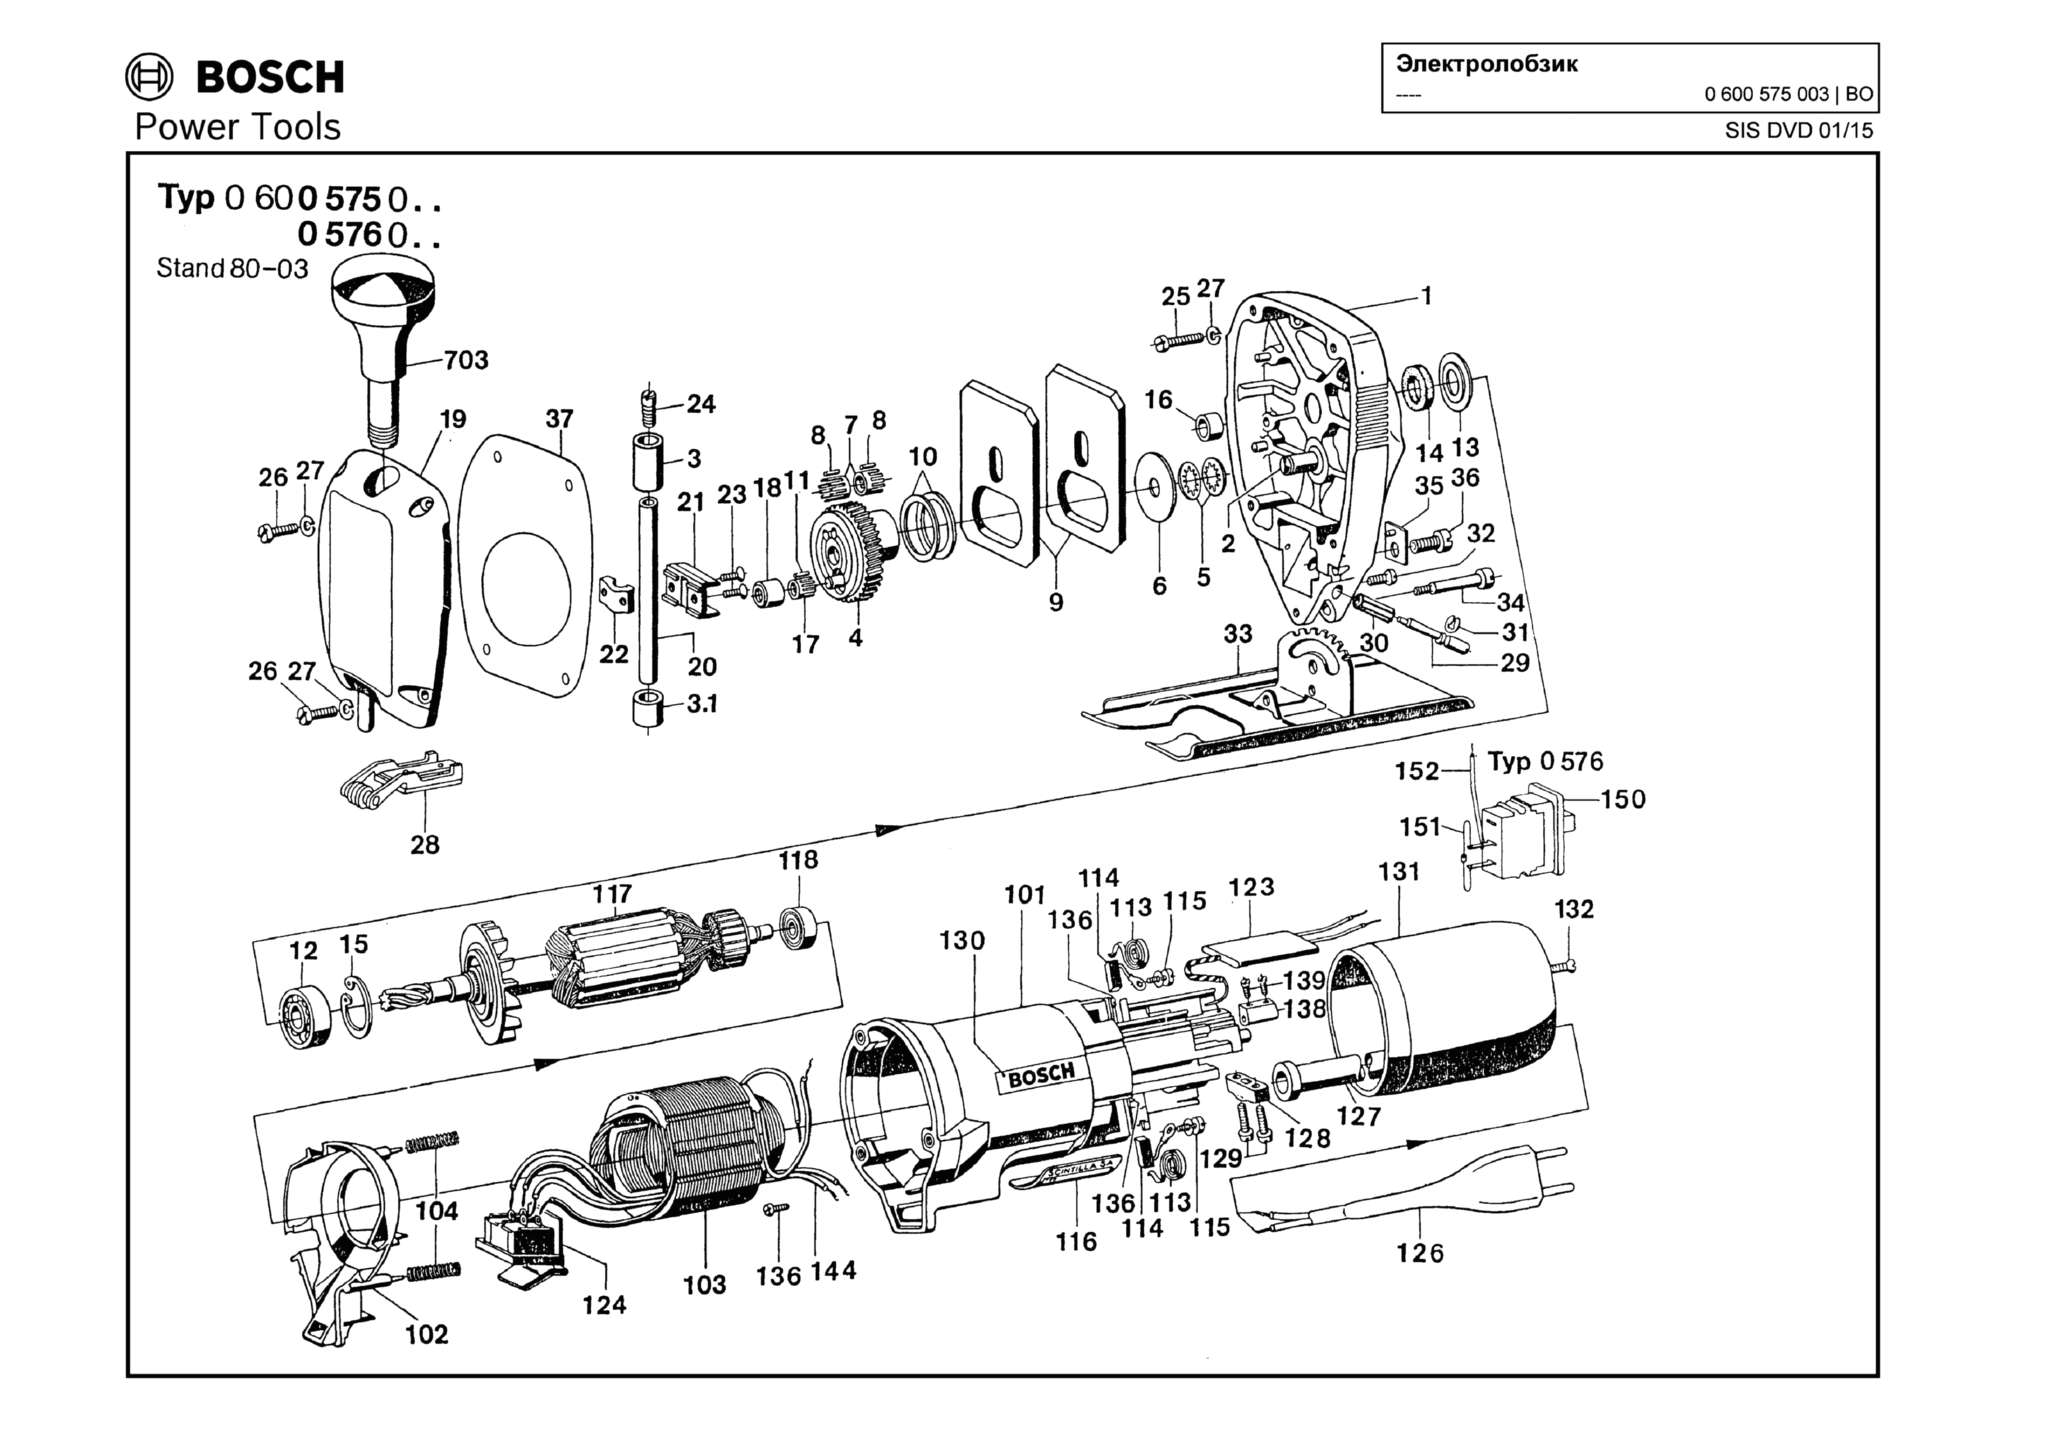 Запчасти, схема и деталировка Bosch (ТИП 0600575003)